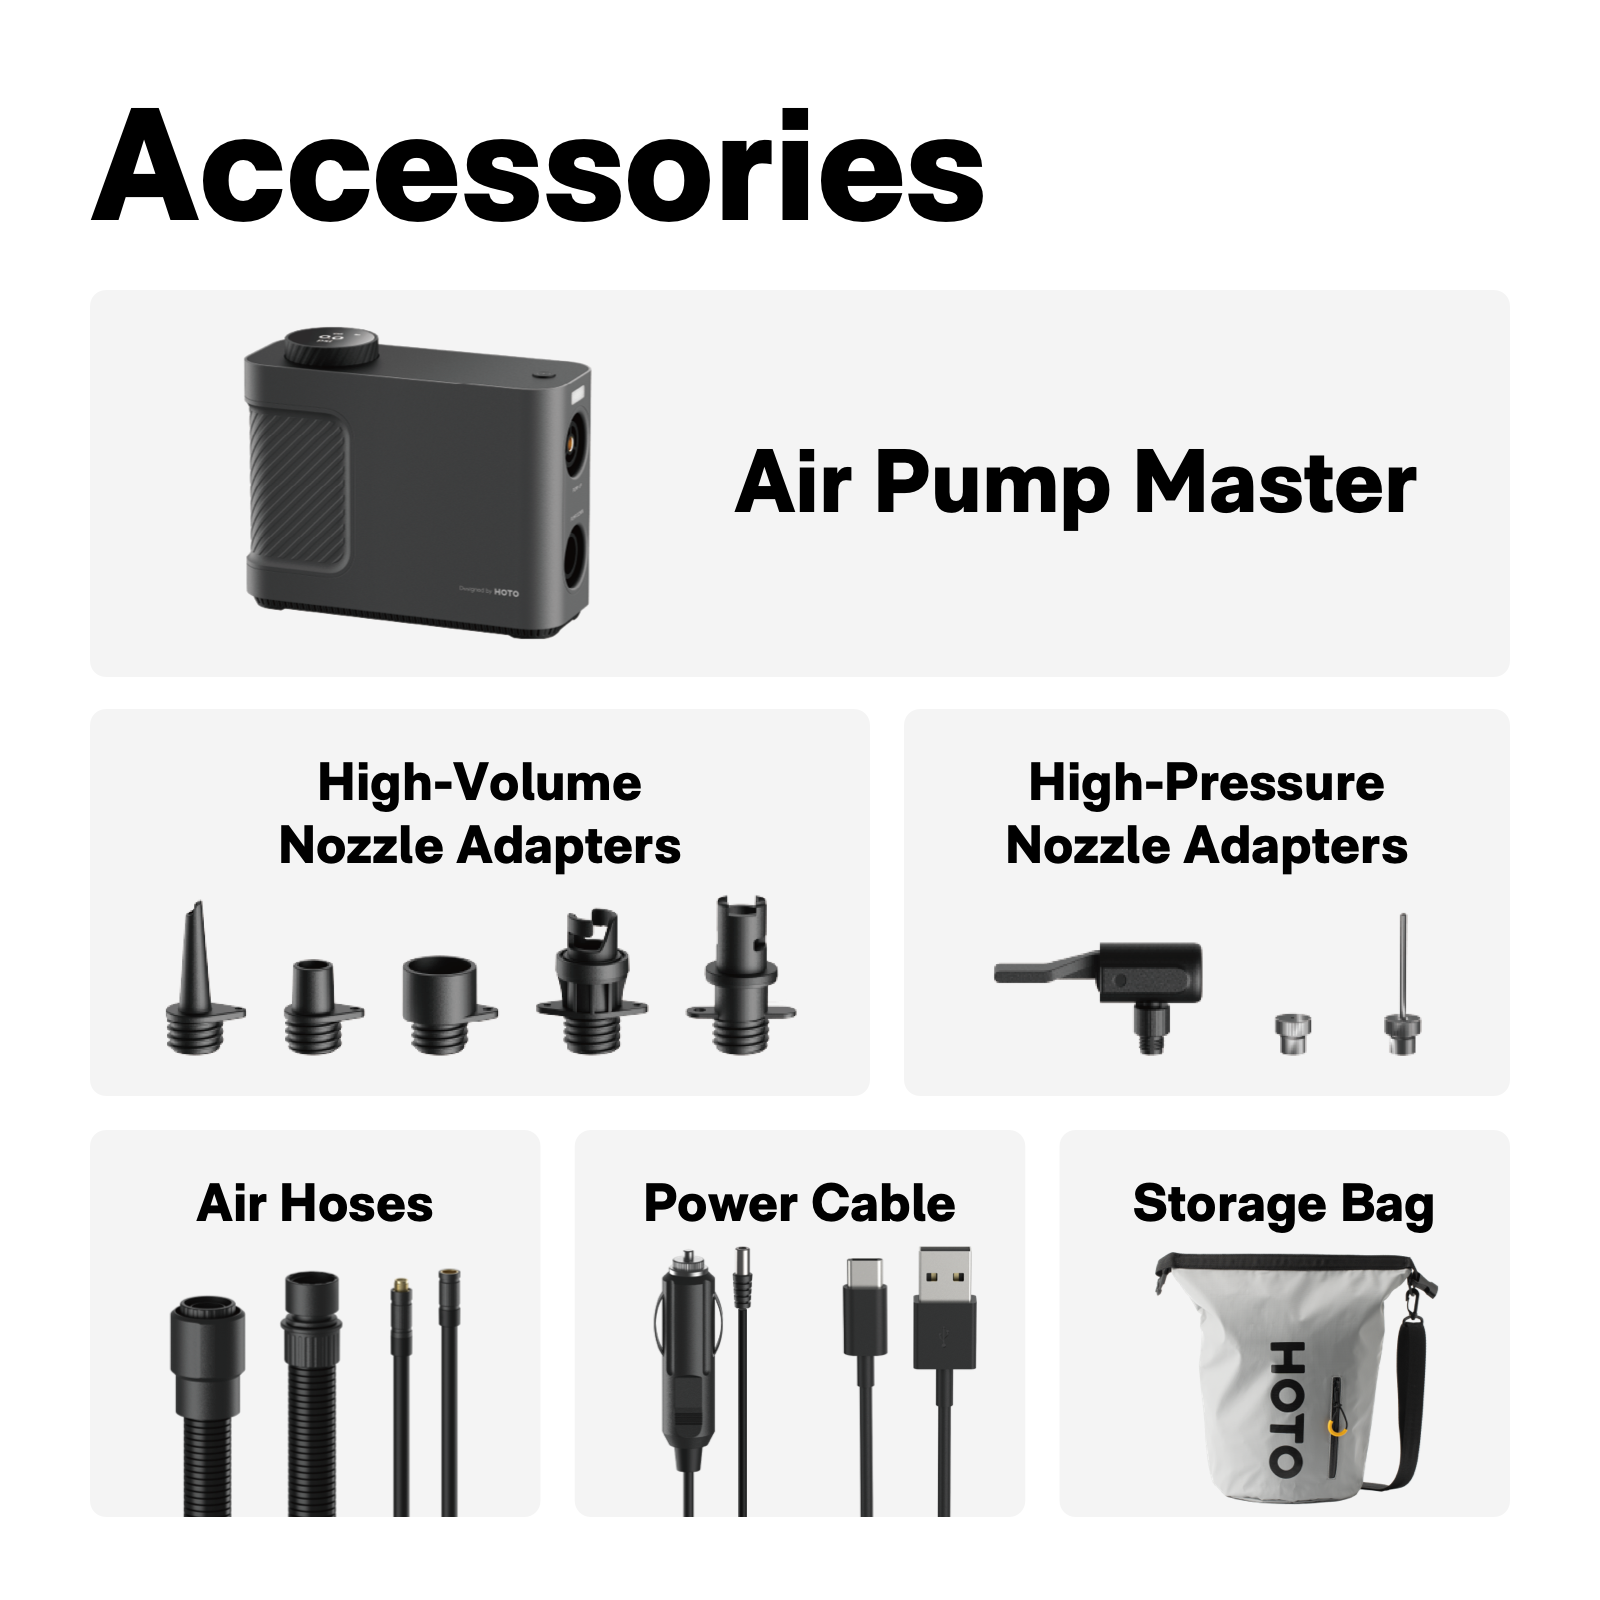 air pump master accessories